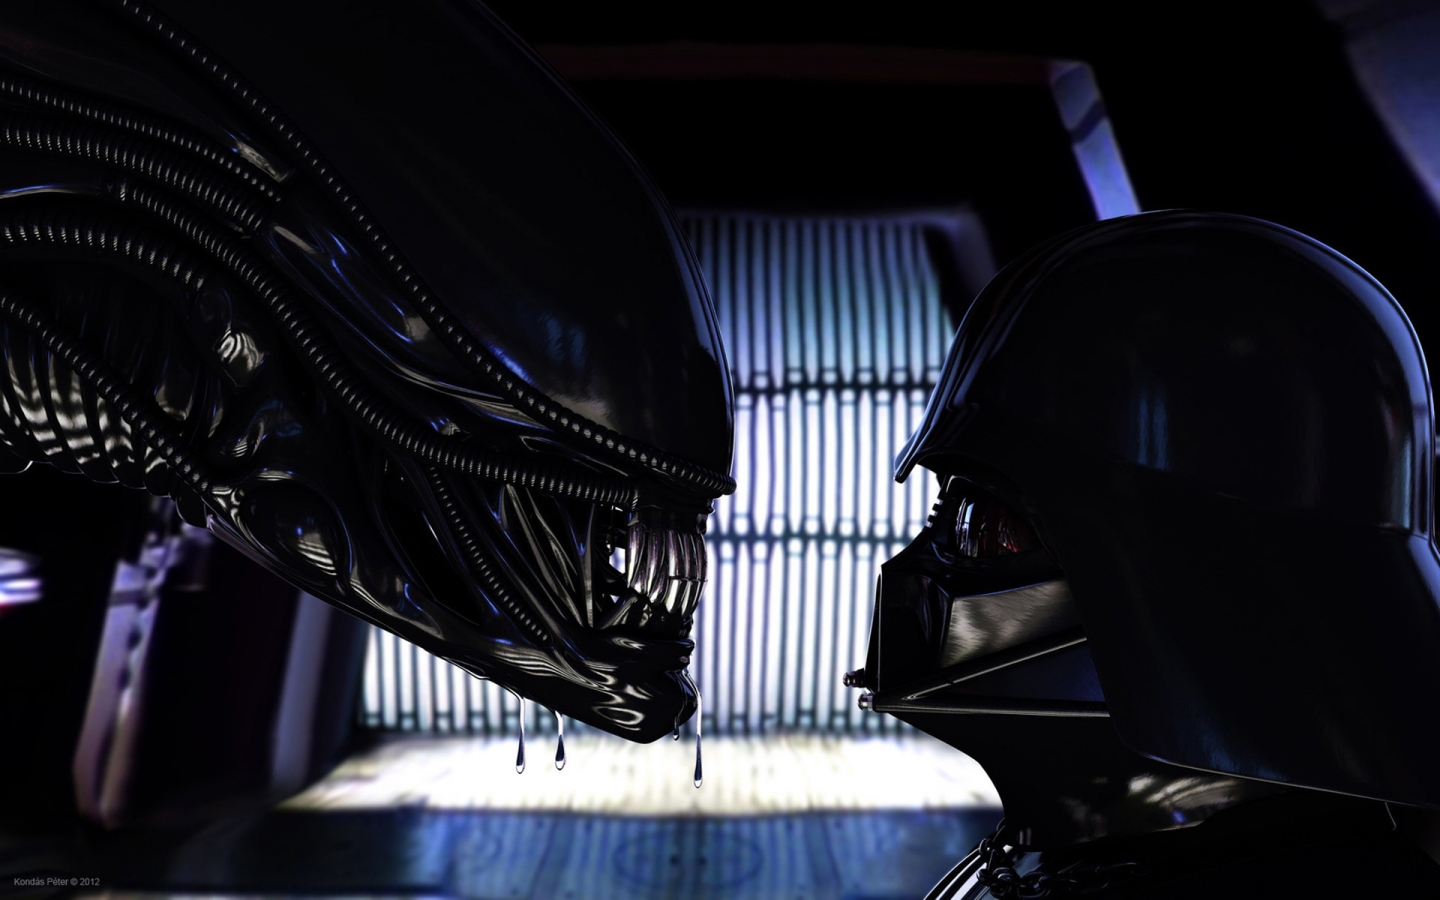 Alien vs Darth Vader for 1440 x 900 widescreen resolution